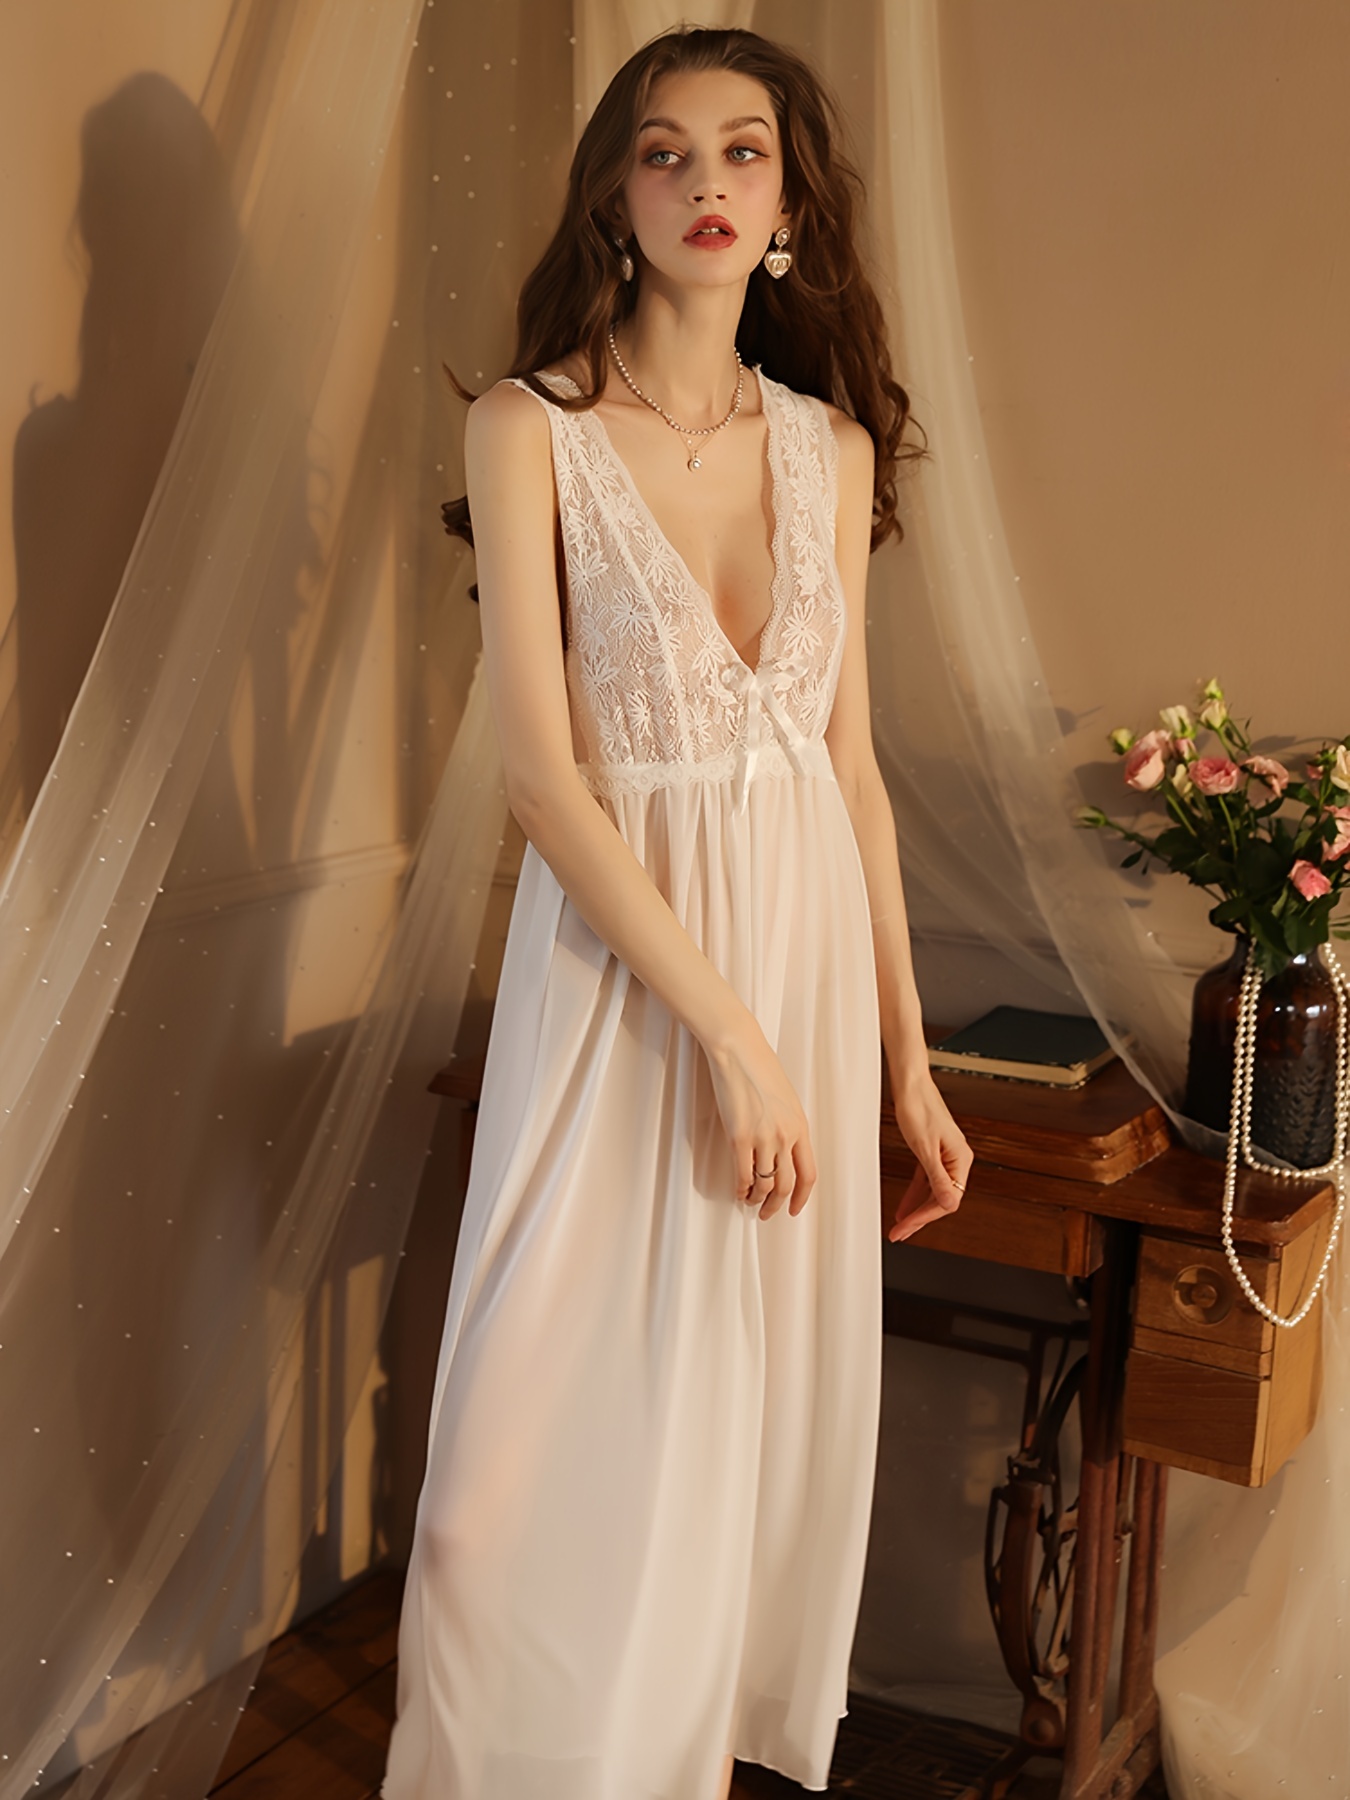 Women Lingerie Lace Night Dress Sleepwear Nightgown